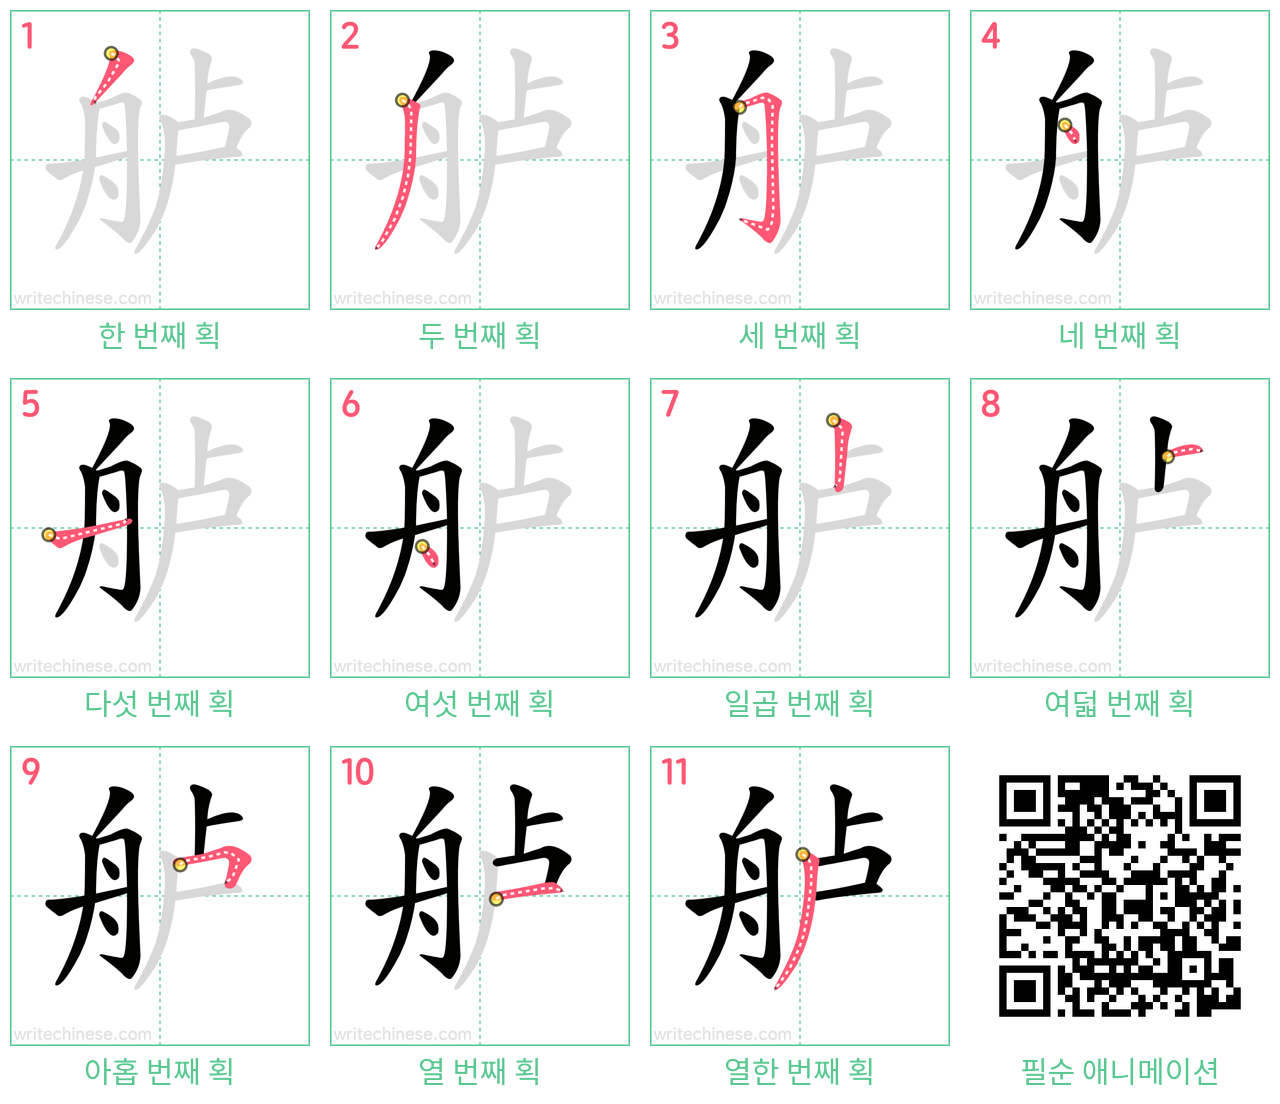 舻 step-by-step stroke order diagrams